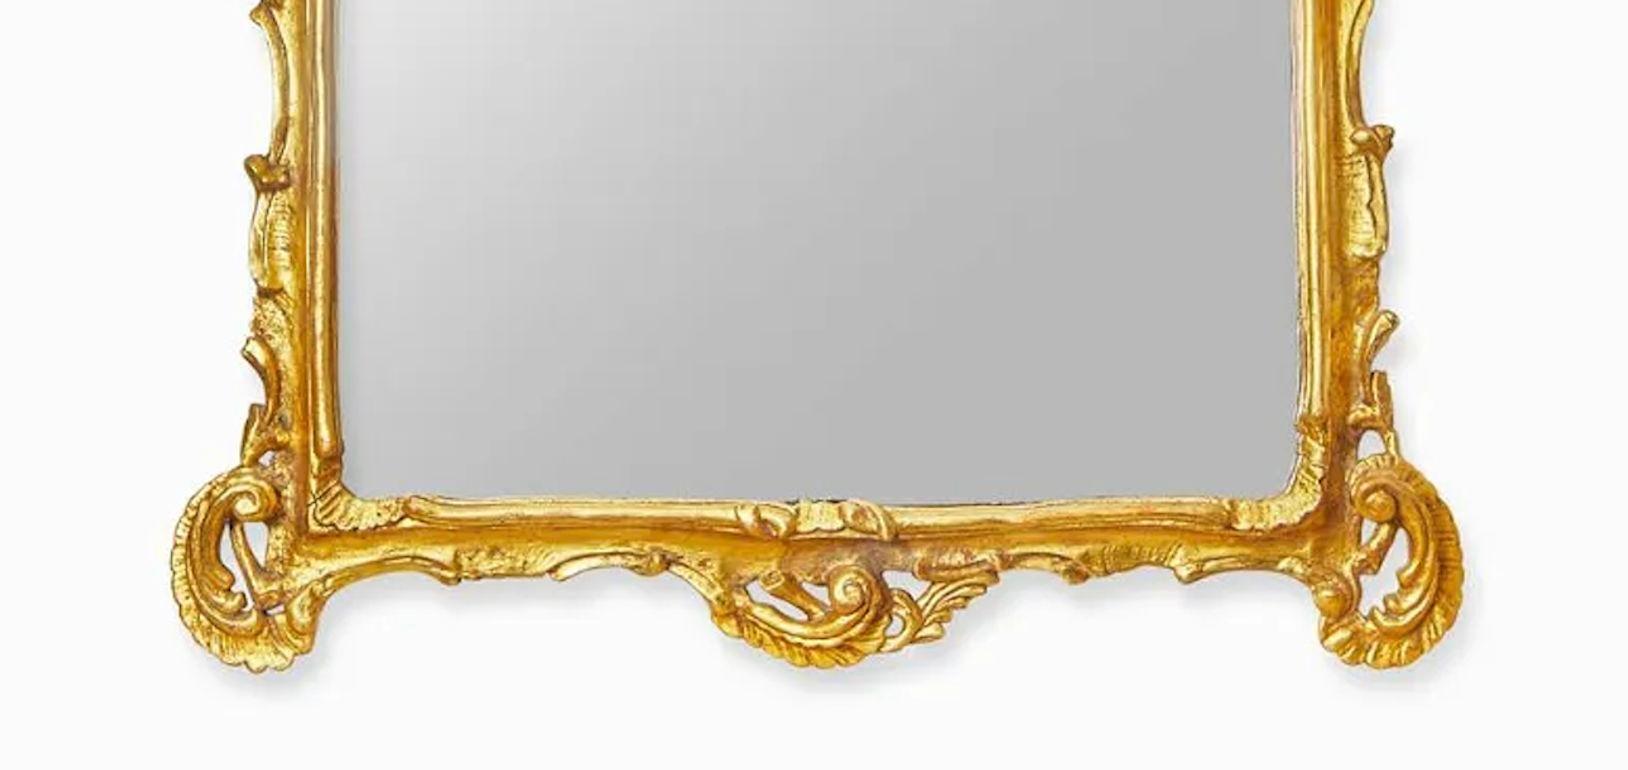 Ein Paar beeindruckender italienischer Rokoko-Spiegel aus vergoldetem Holz aus dem späten 19. Jahrhundert. Großartige blattförmige, handgeschnitzte Details.
Abmessungen:
59 